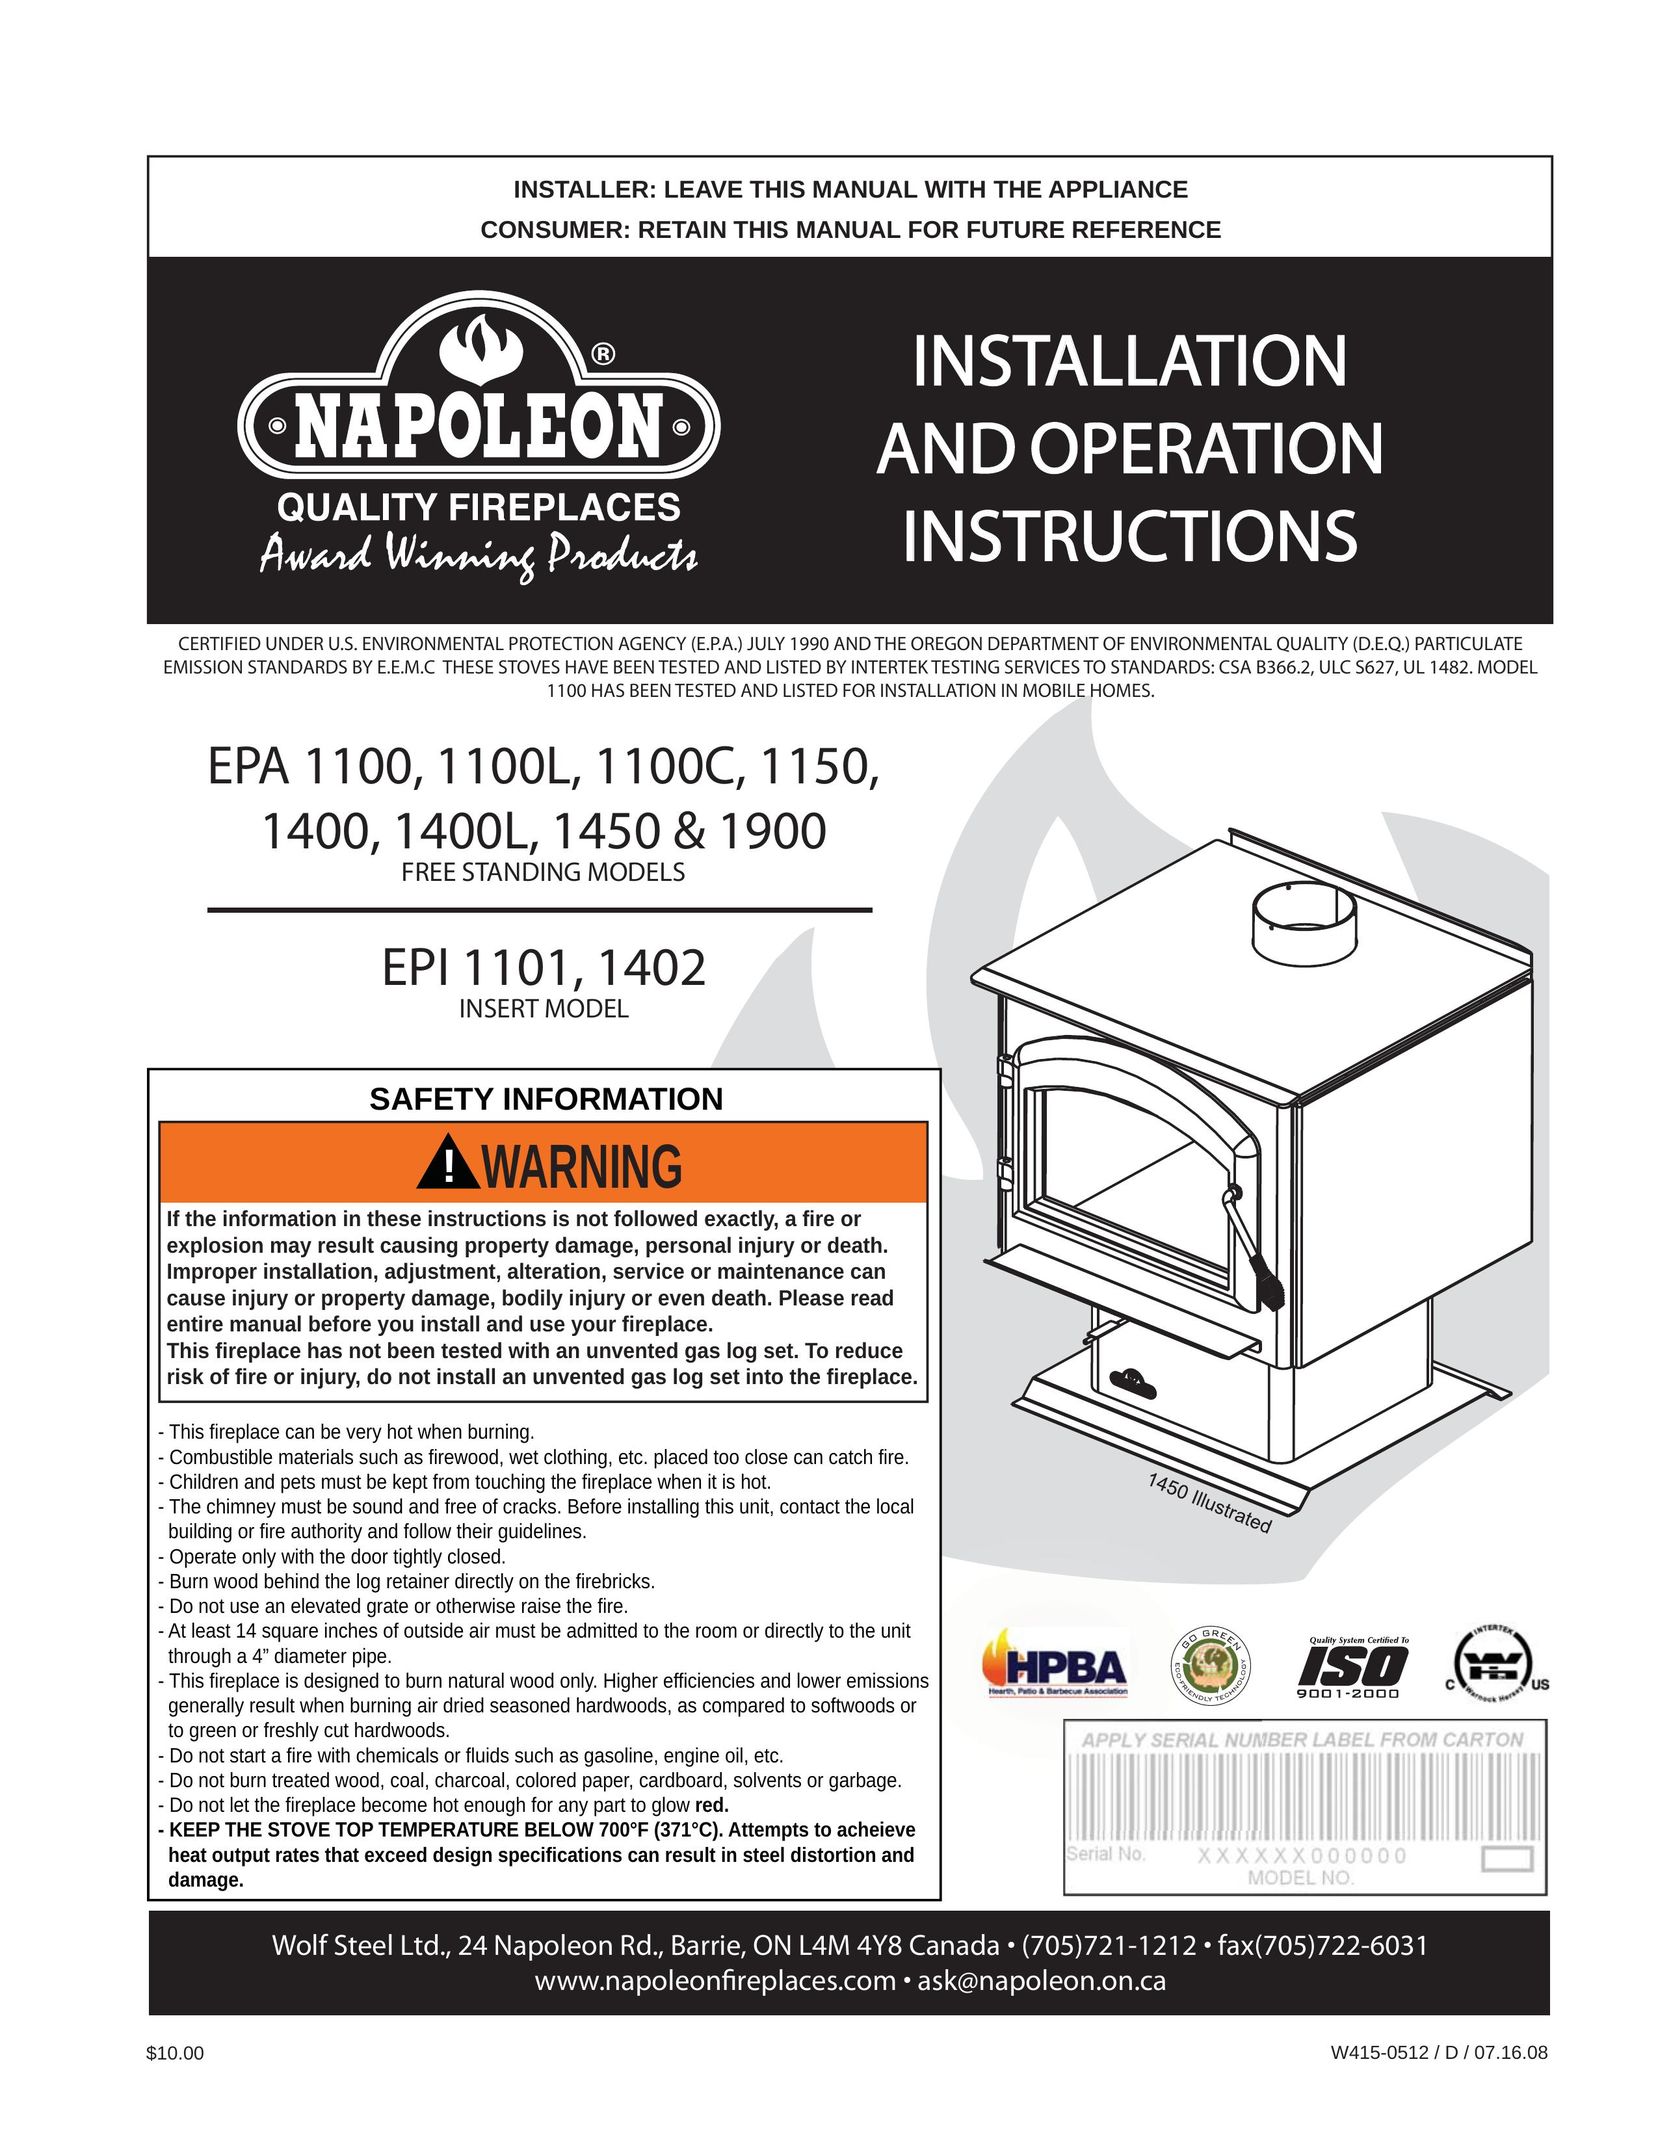 Napoleon Fireplaces EPA 1450 Indoor Fireplace User Manual